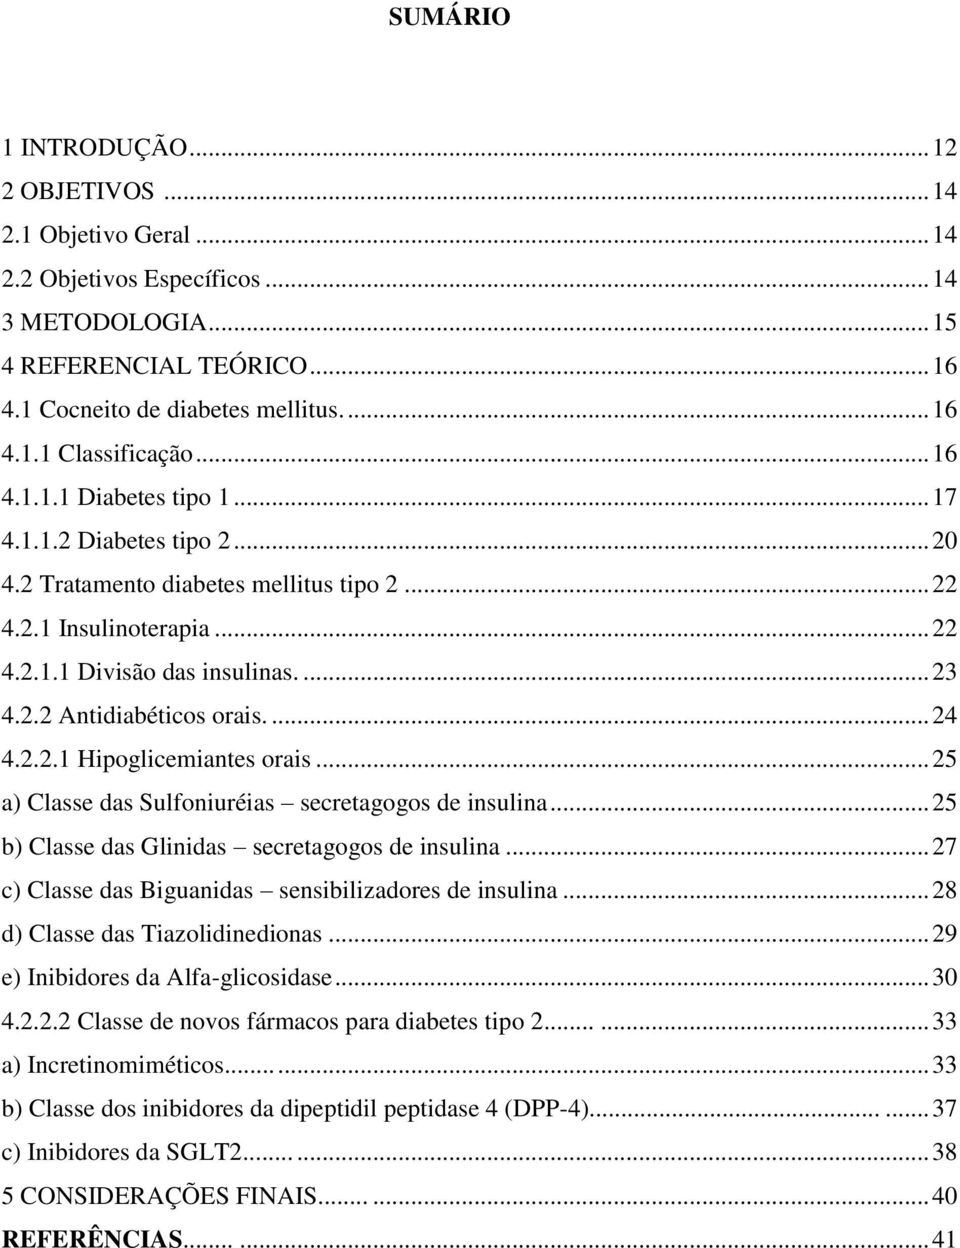 ... 24 4.2.2.1 Hipoglicemiantes orais... 25 a) Classe das Sulfoniuréias secretagogos de insulina... 25 b) Classe das Glinidas secretagogos de insulina.